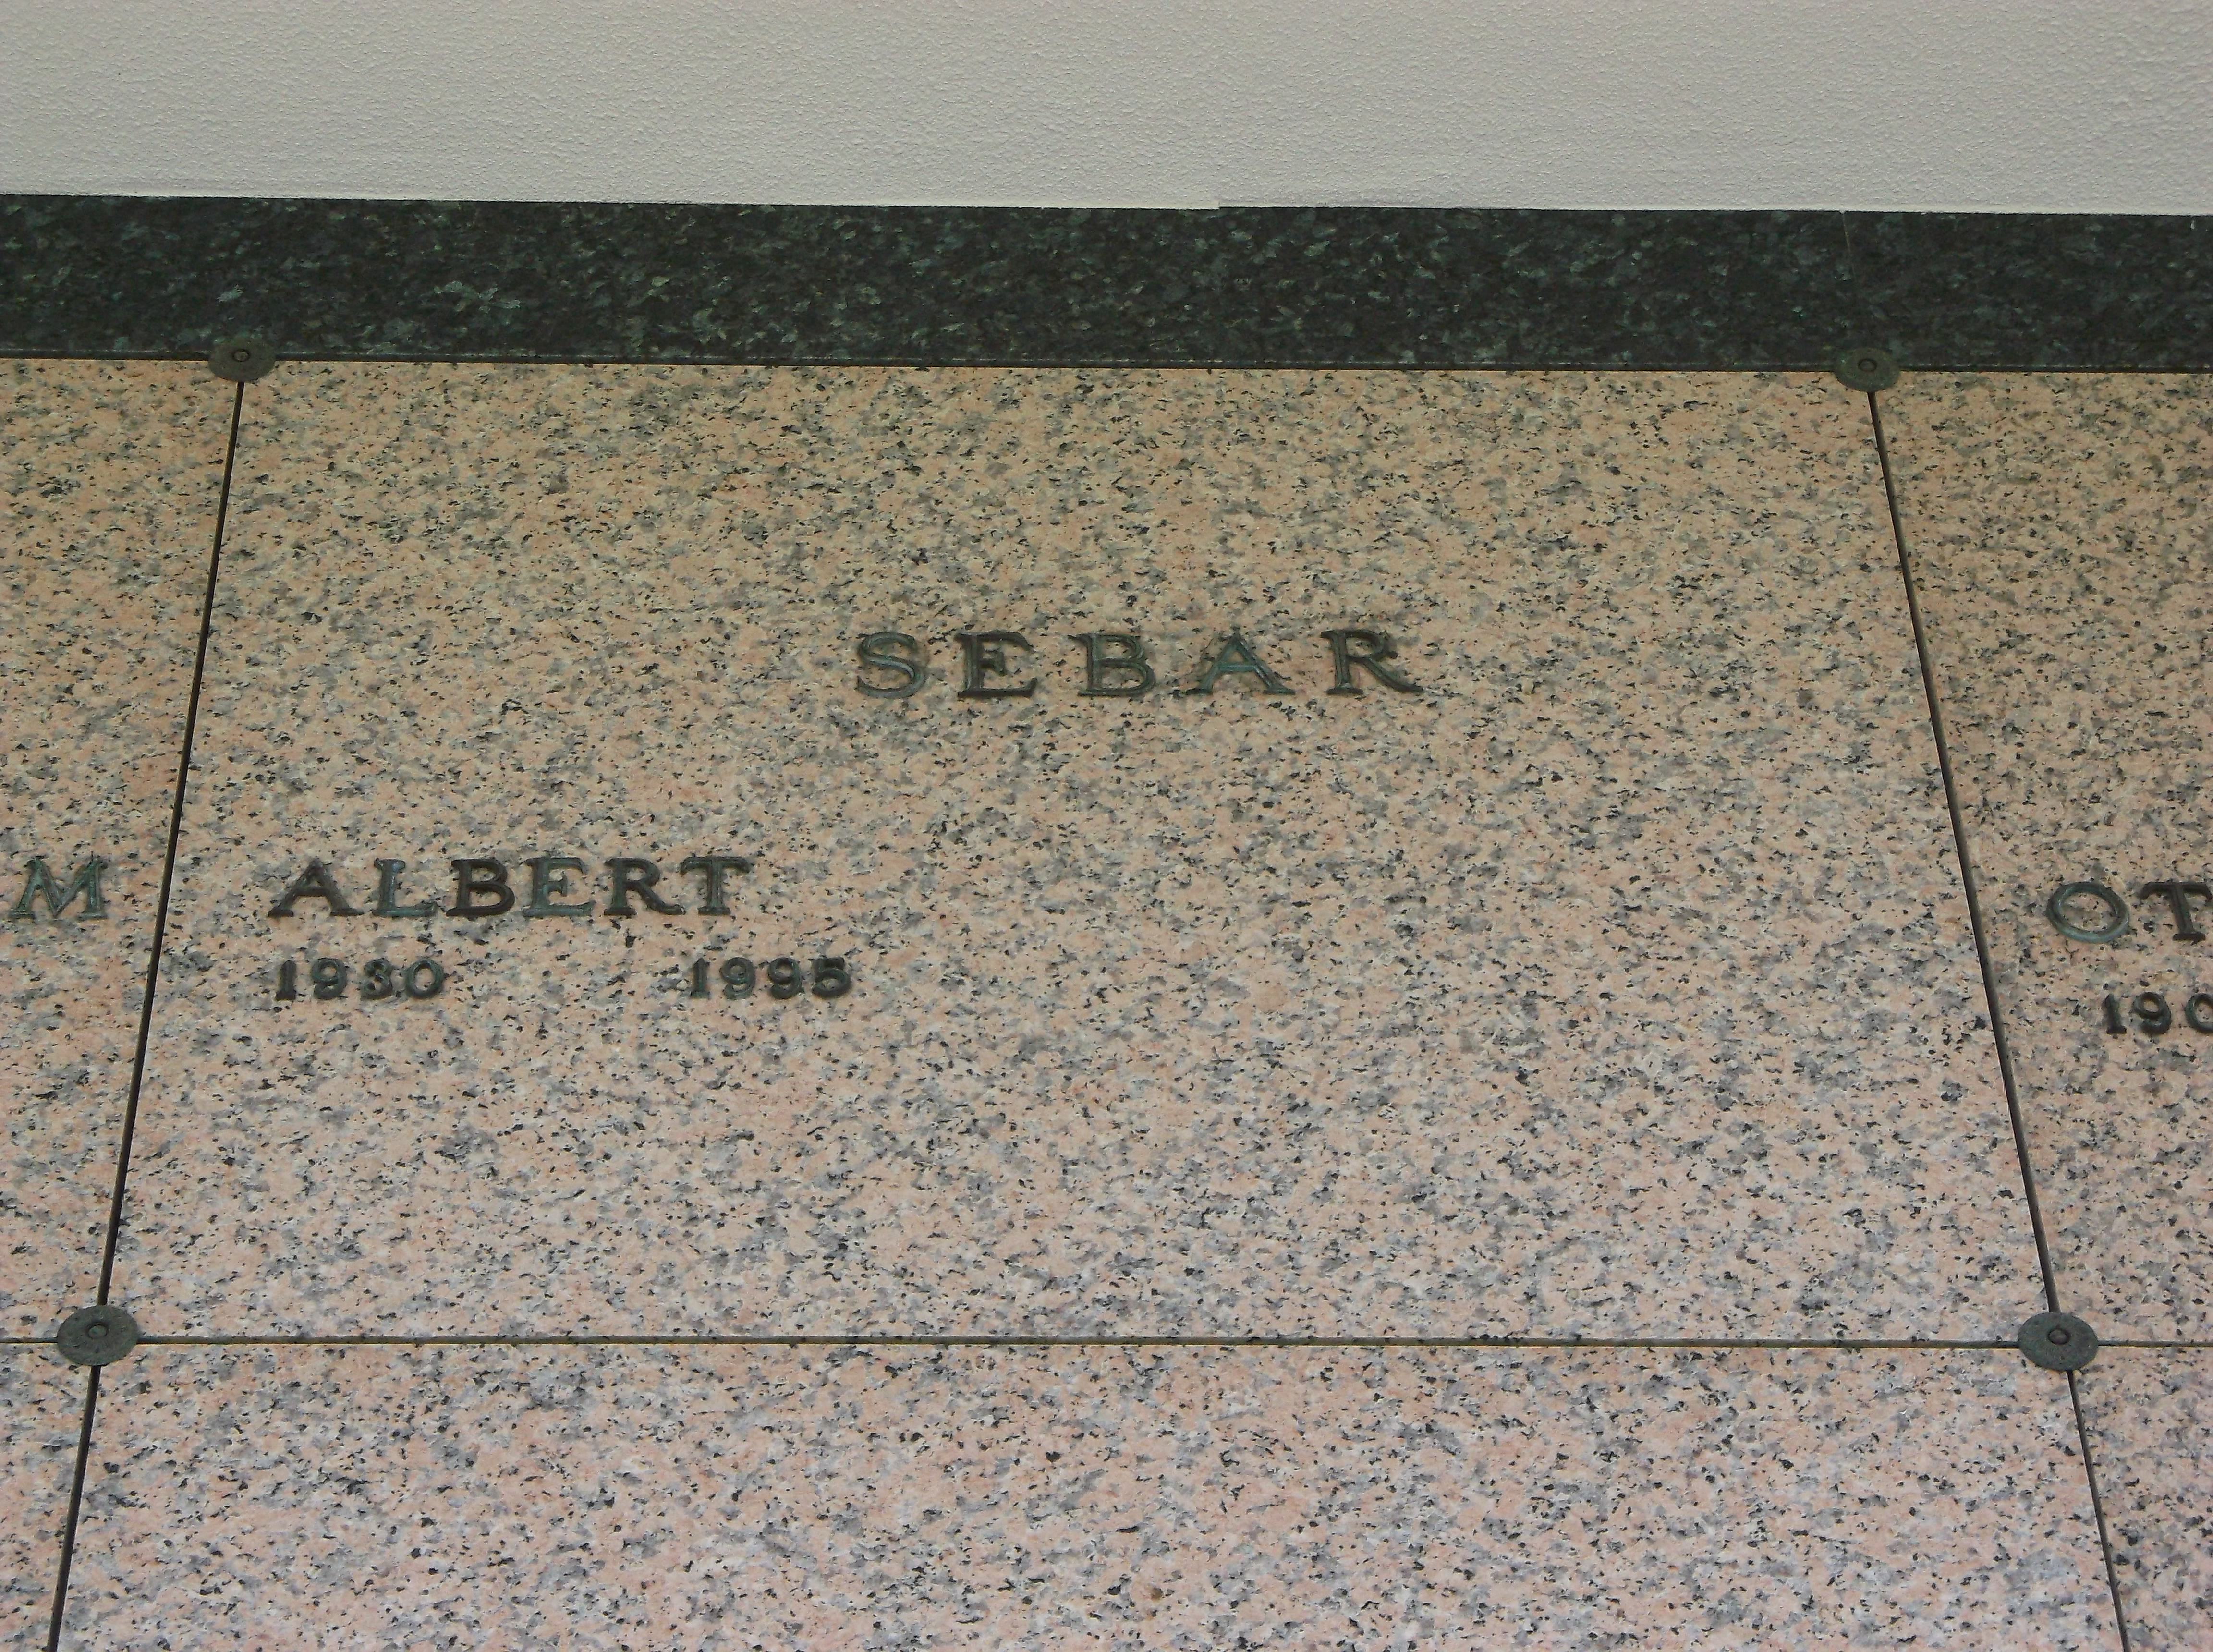 Albert Sebar